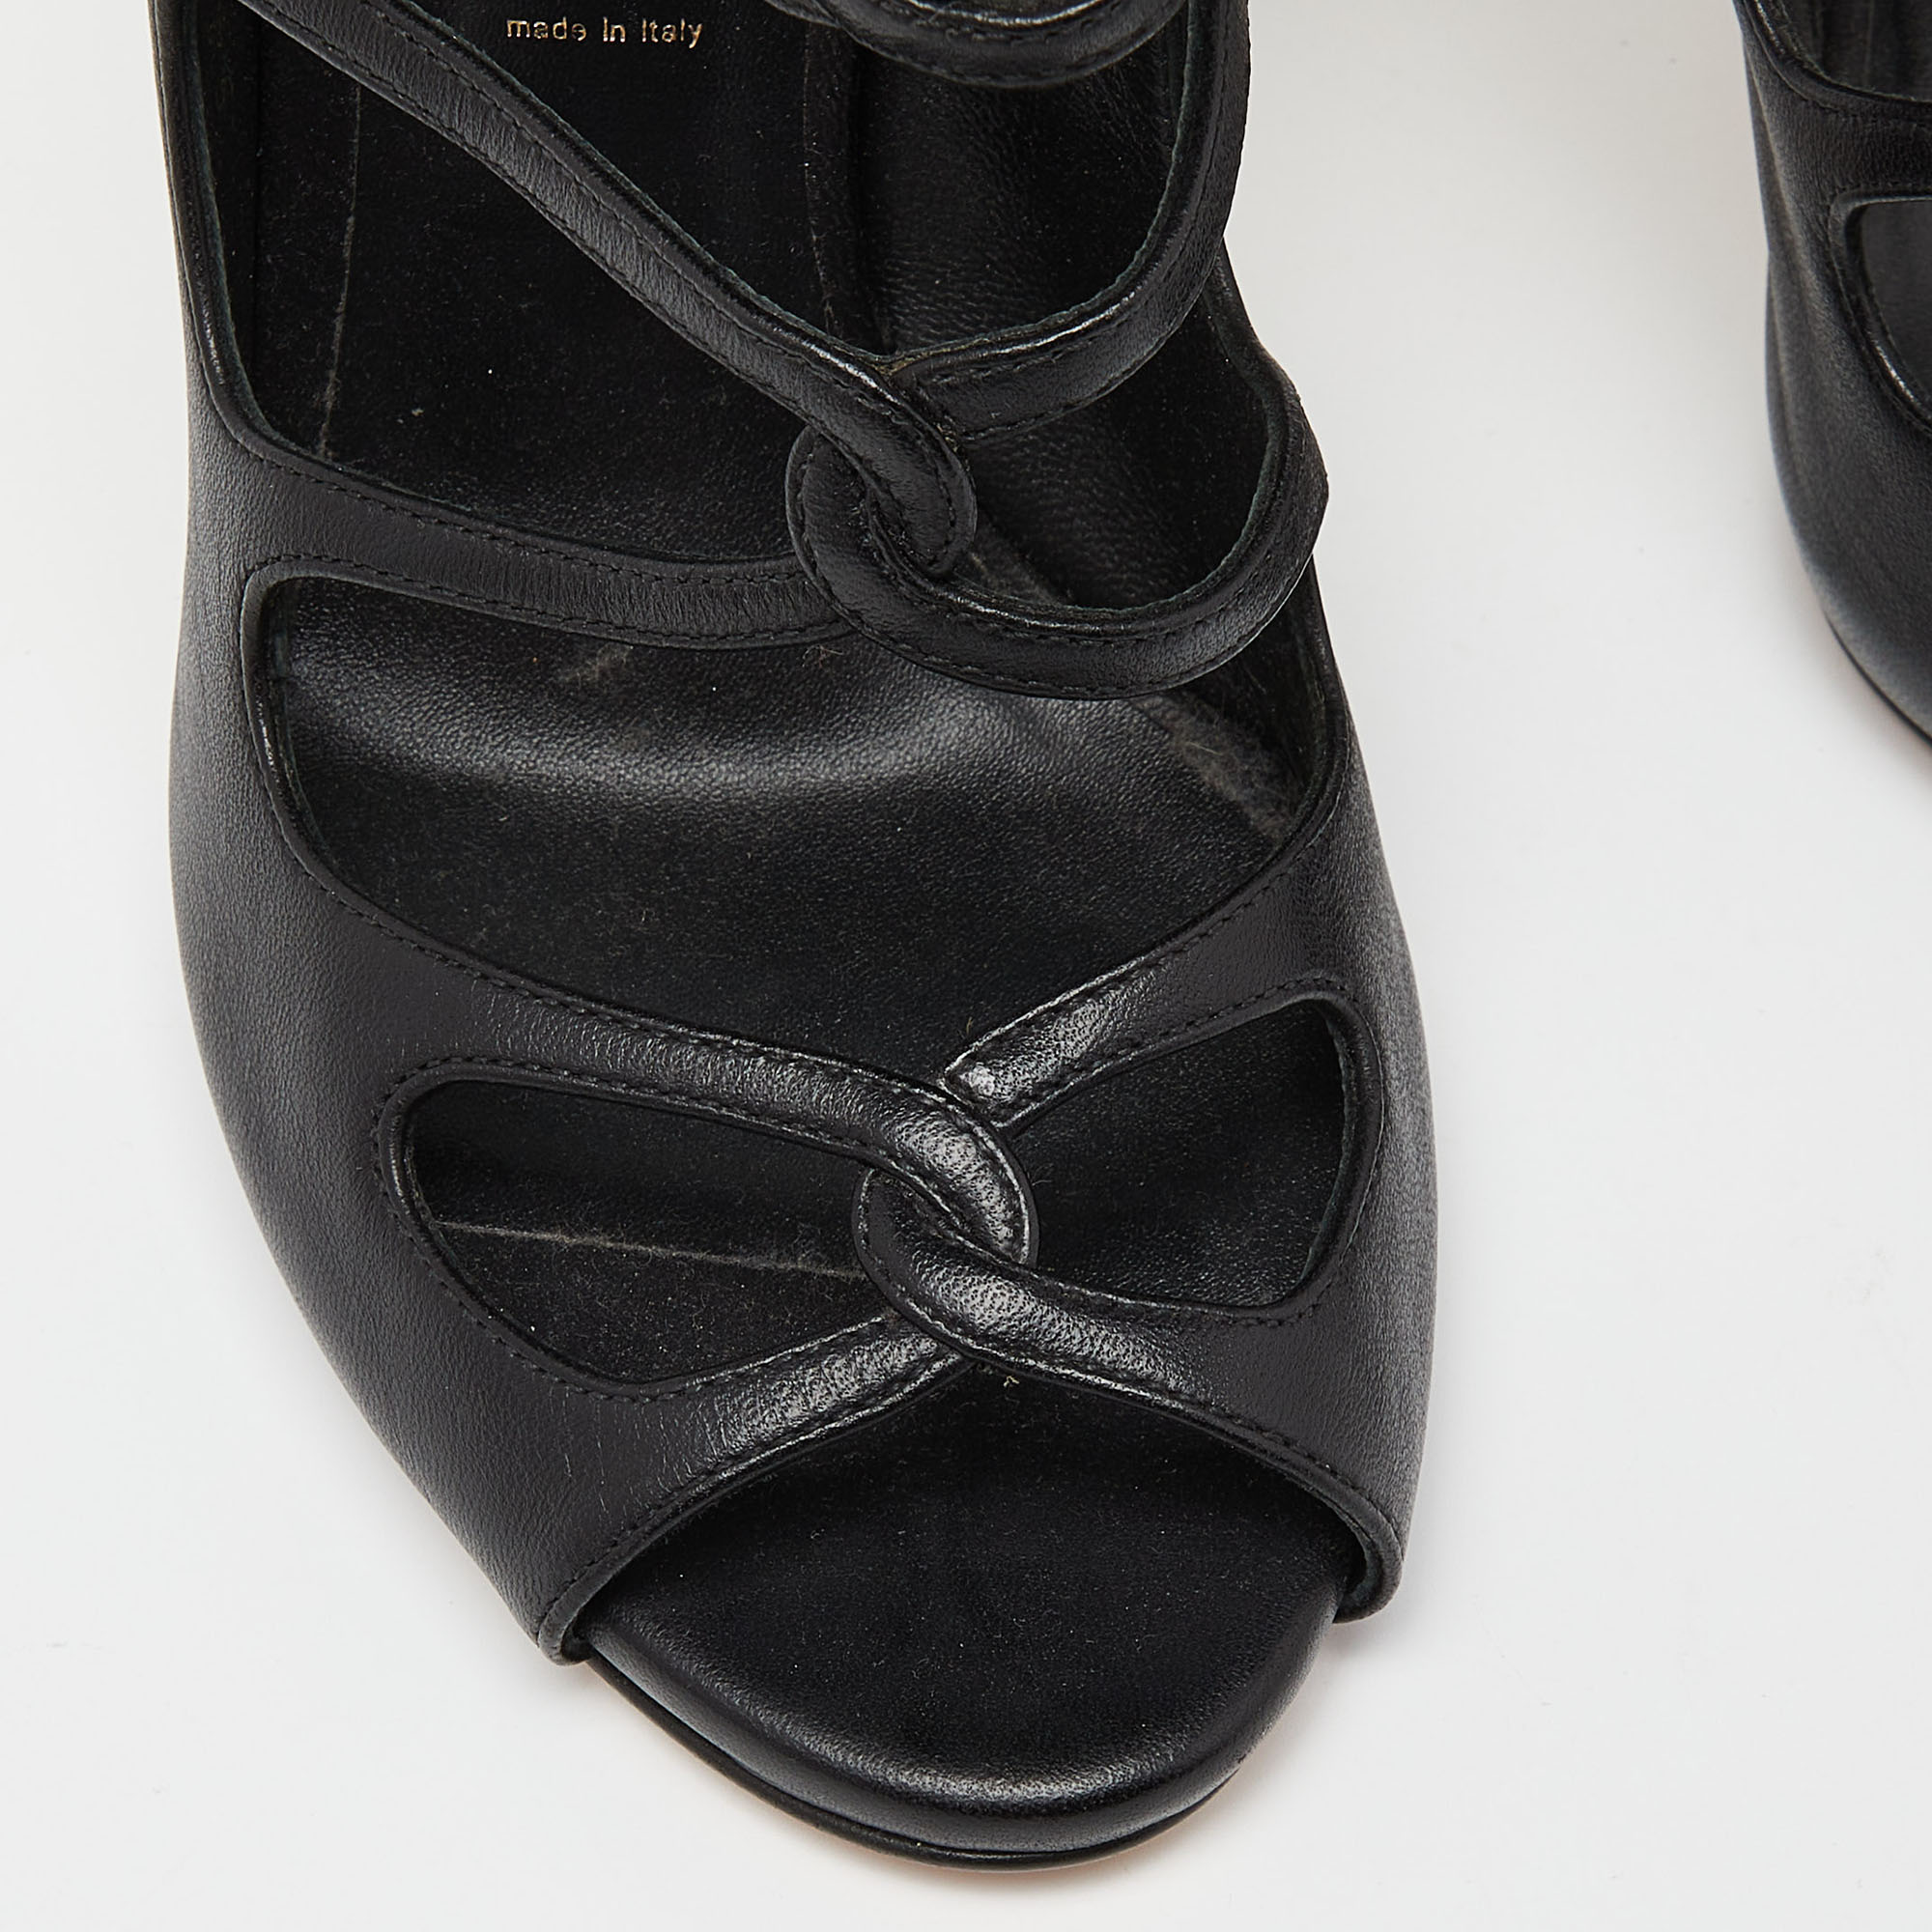 Casadei Black Leather Cutout Sandals Size 37